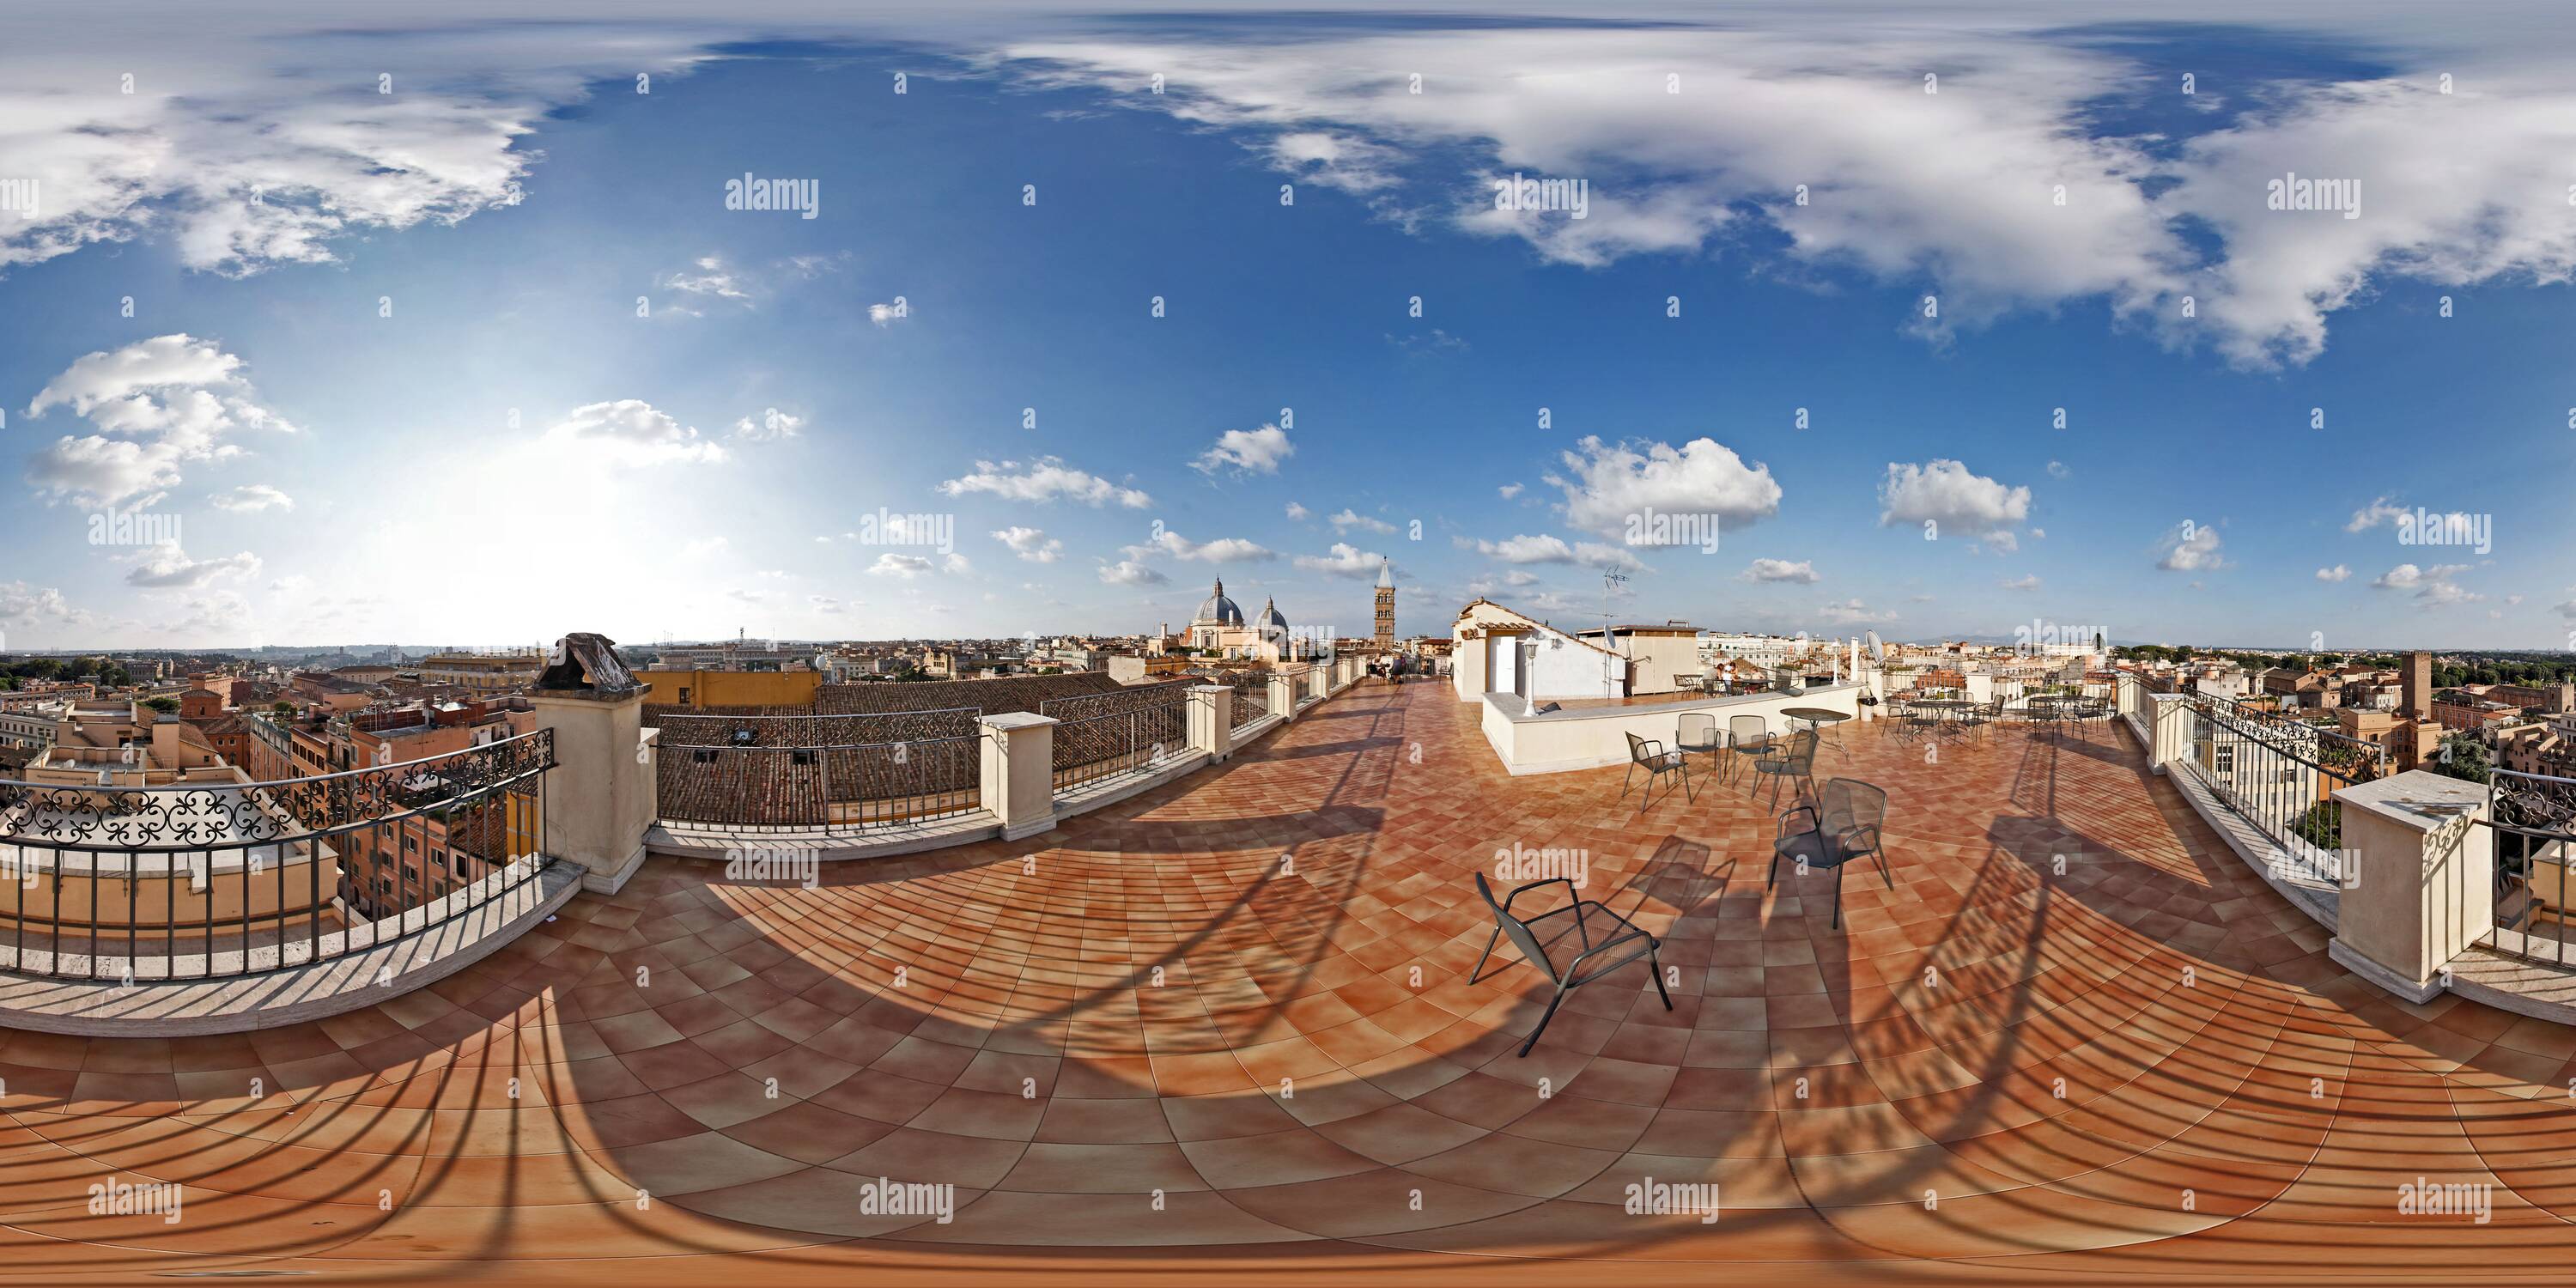 Visualizzazione panoramica a 360 gradi di Roma, Skyline come si vede da una terrazza panoramica sul Colle Esquilino